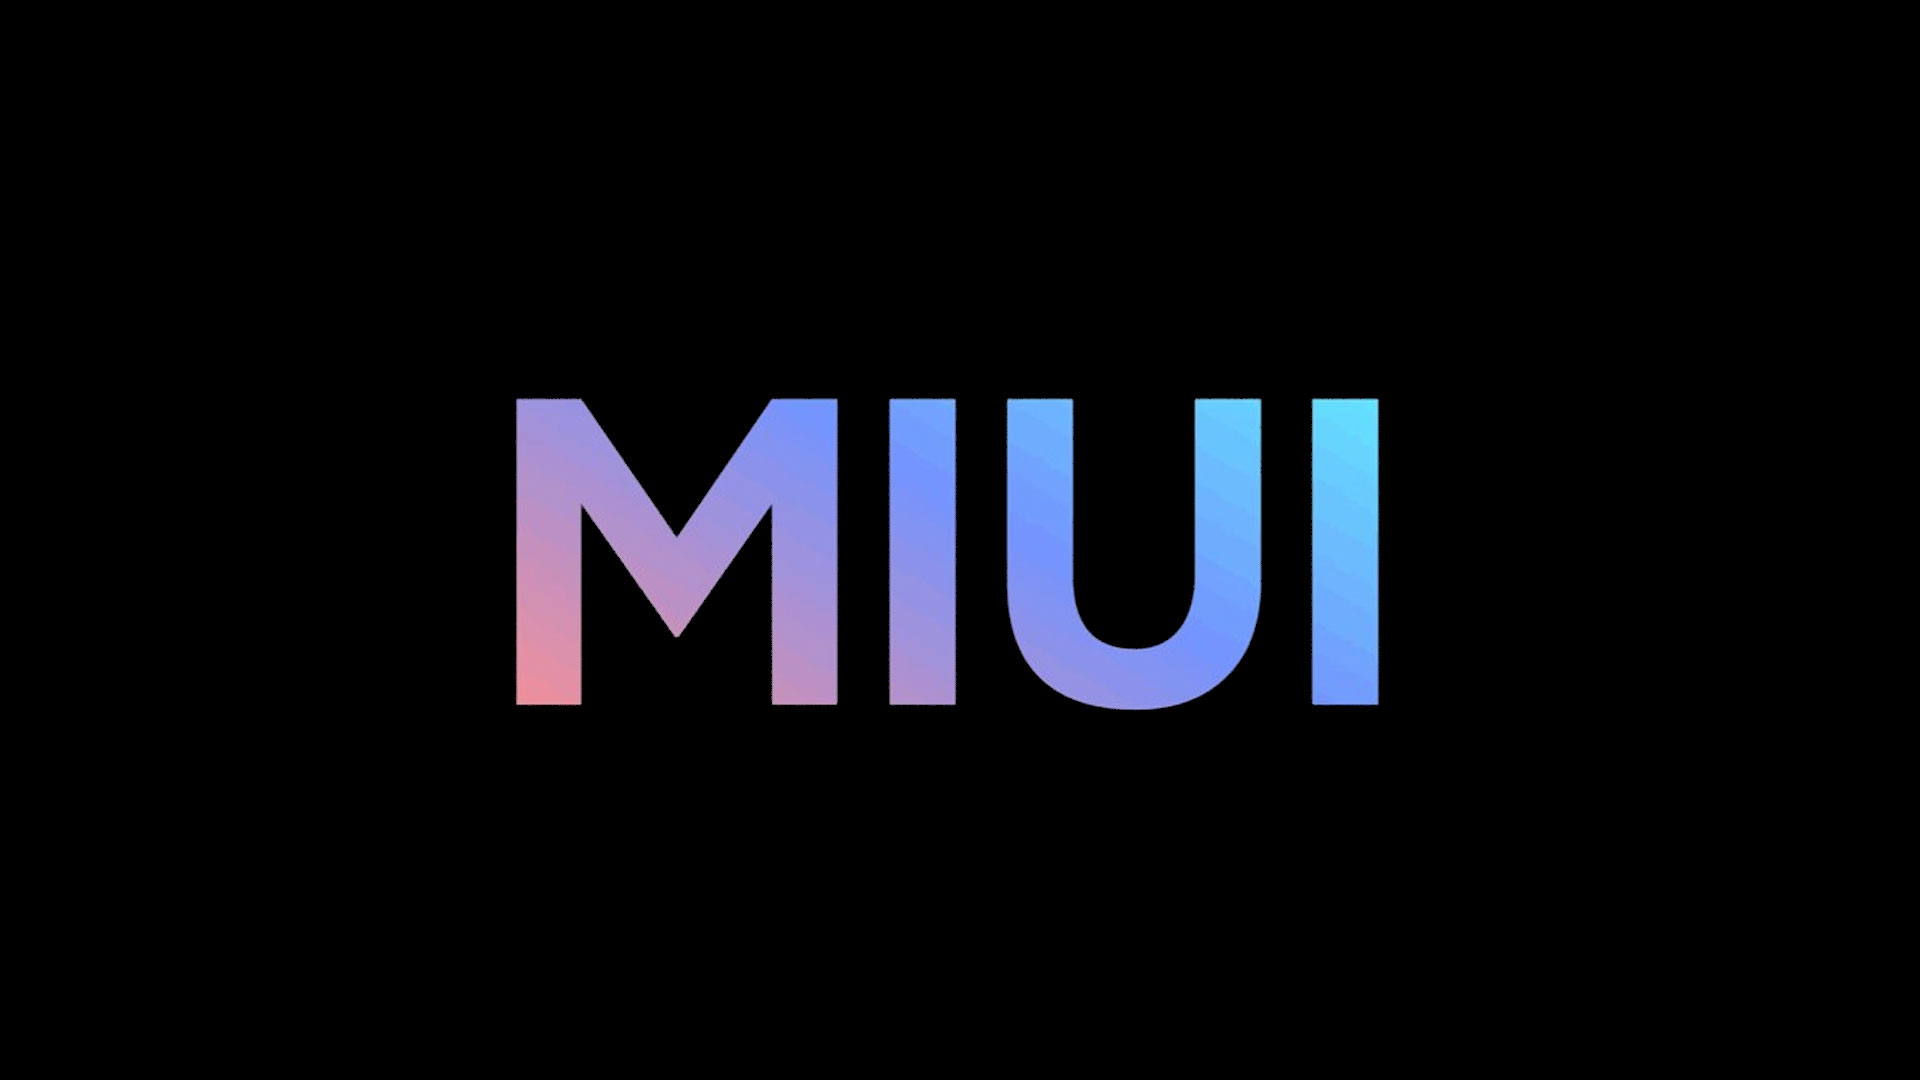 MIUI heeft meer dan 600 miljoen maandelijkse gebruikers - een stijging van 100 miljoen in anderhalf jaar tijd